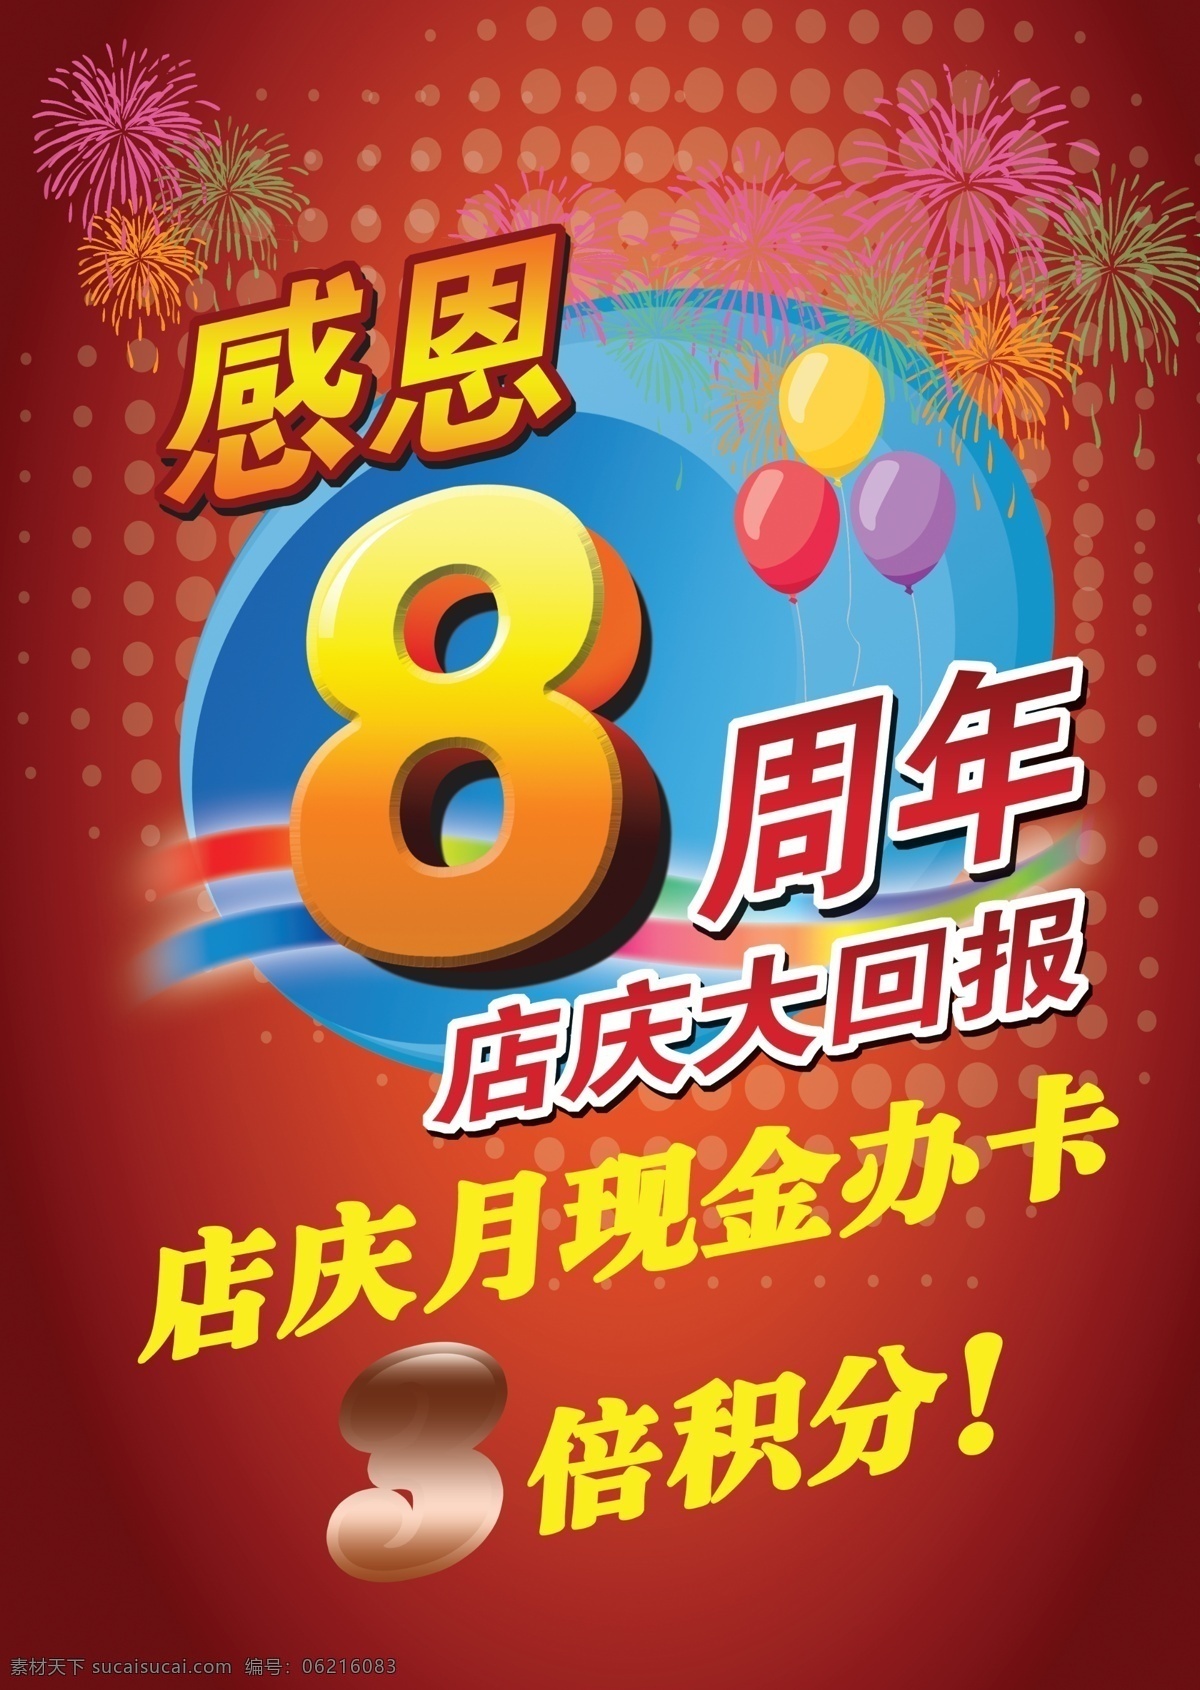 八 周年 店 庆 海报 烟花 红色背景 飘带 立体数字8 气球 3倍积分 蓝色渐变 广告设计模板 源文件